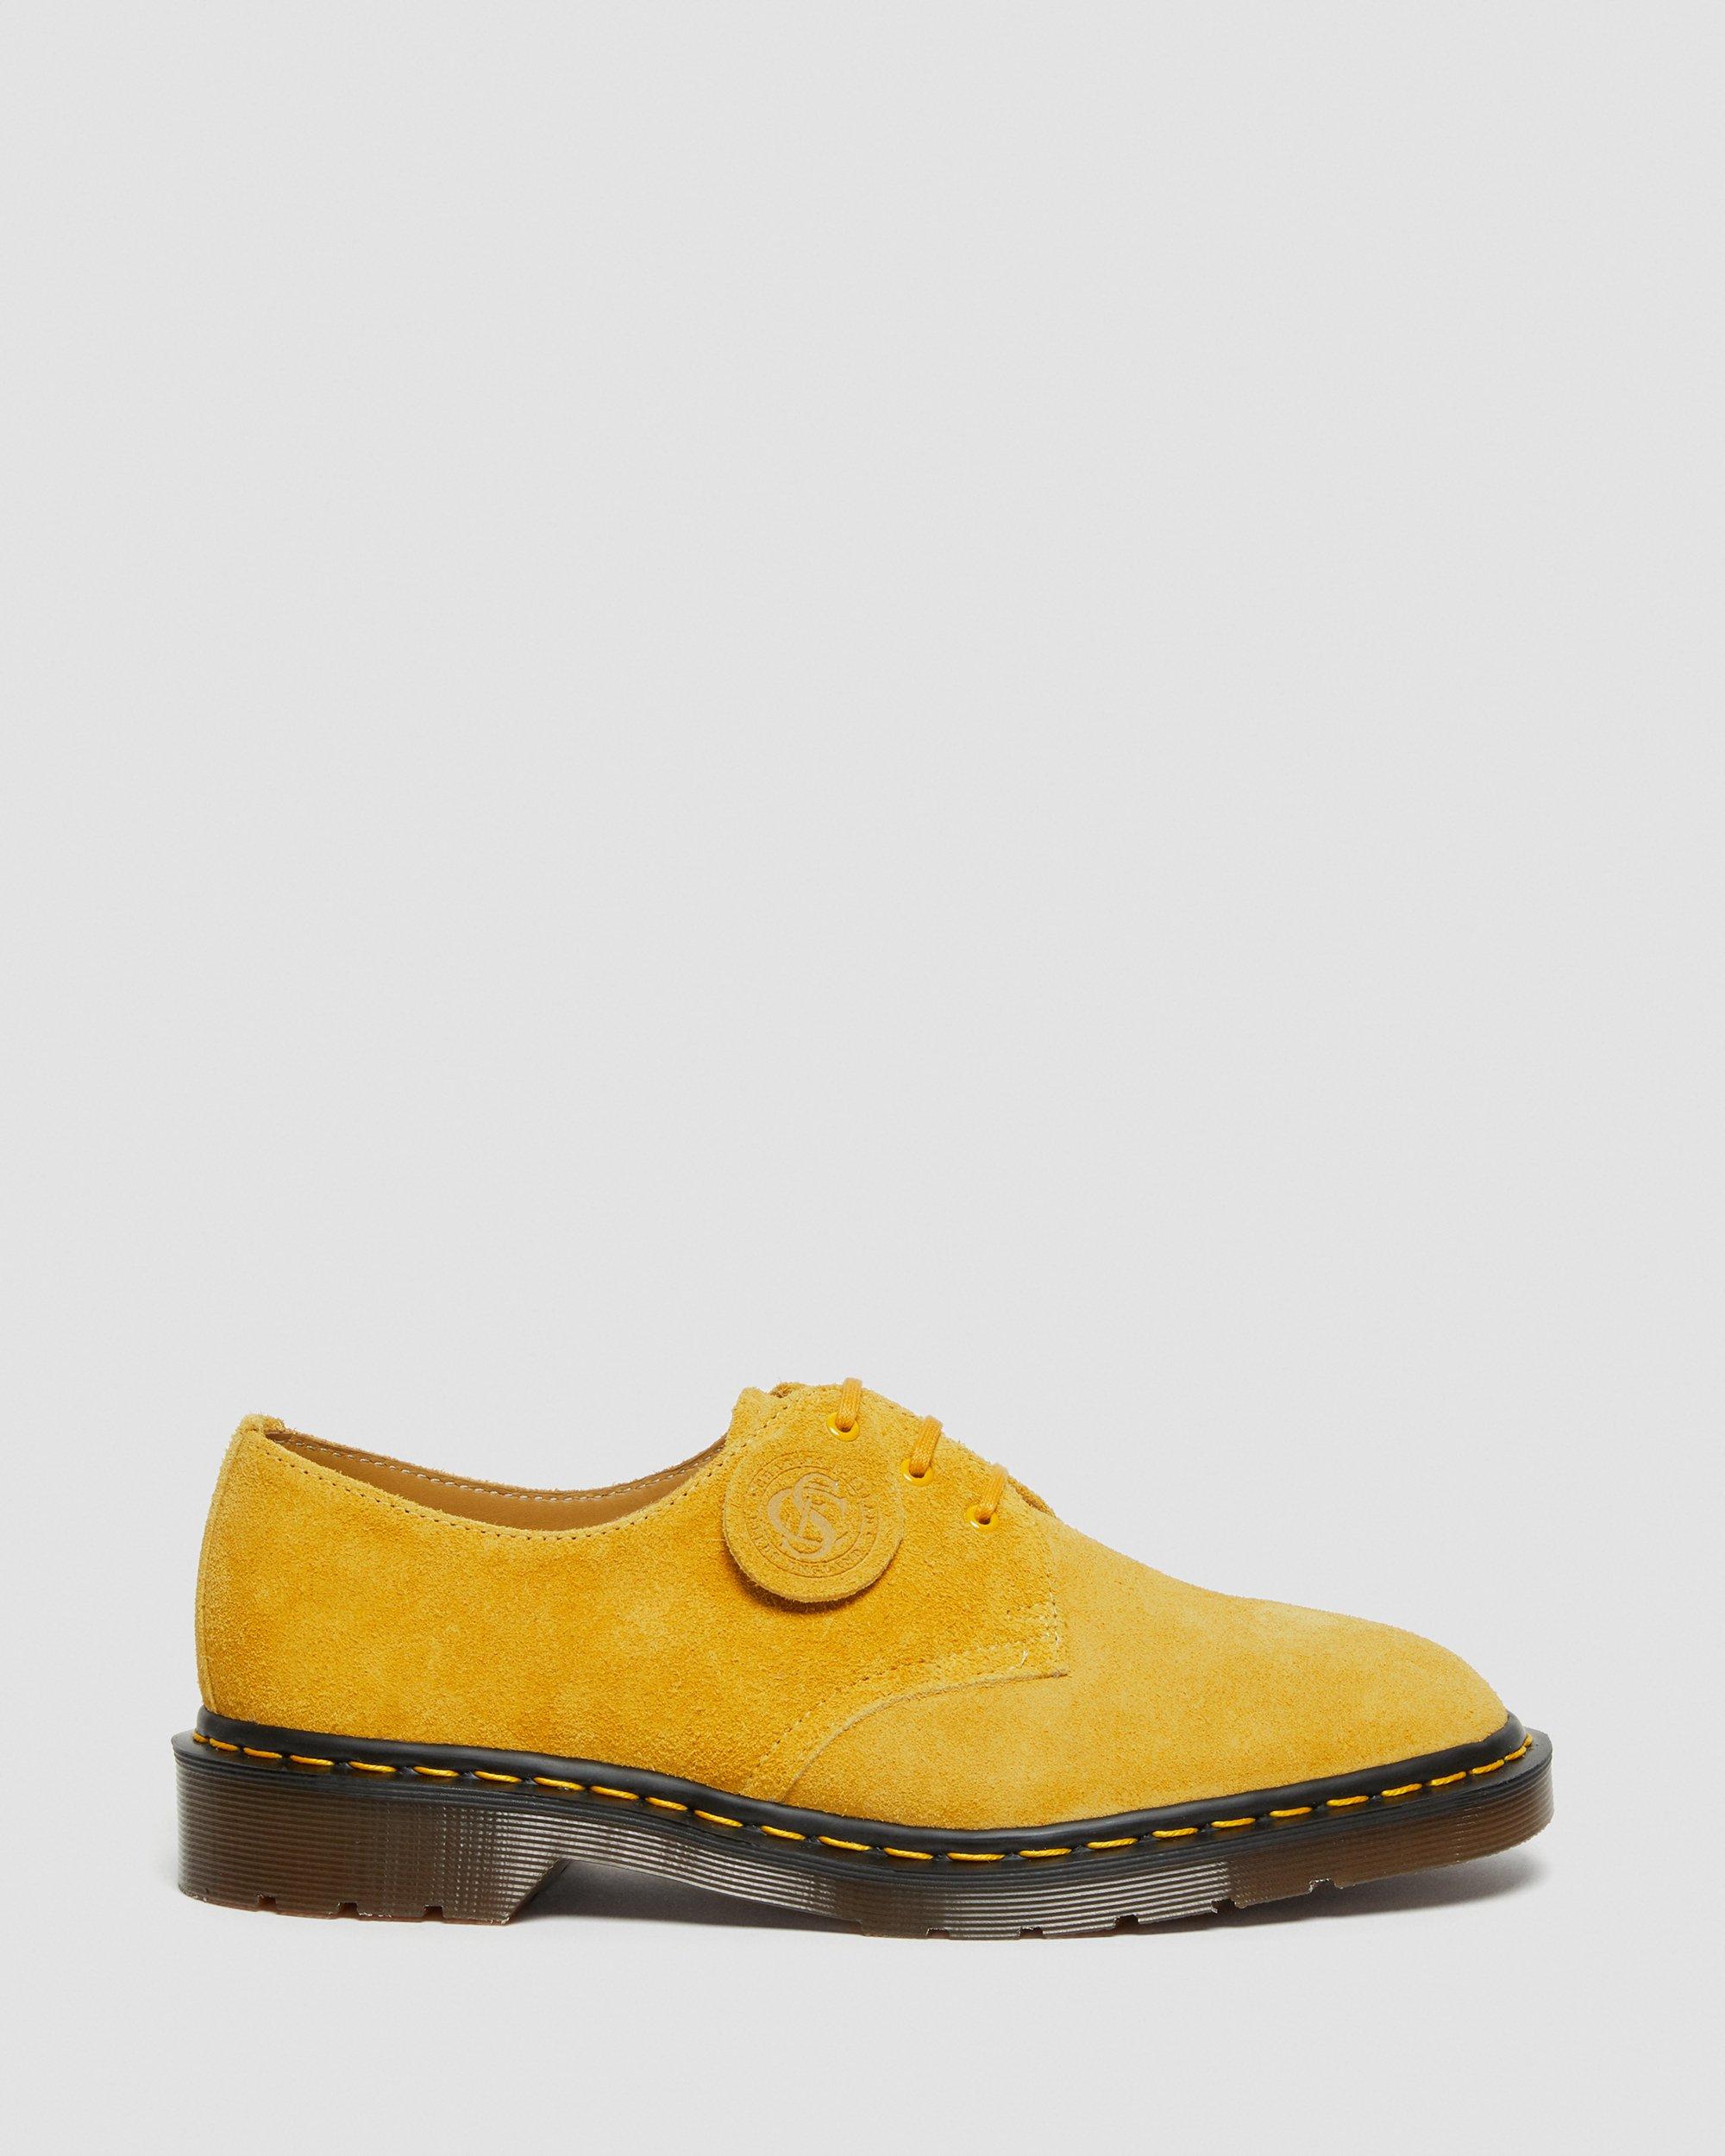 ファッション/小物 ファッション雑貨 1461 Made In England Suede Oxford Shoes | Dr. Martens